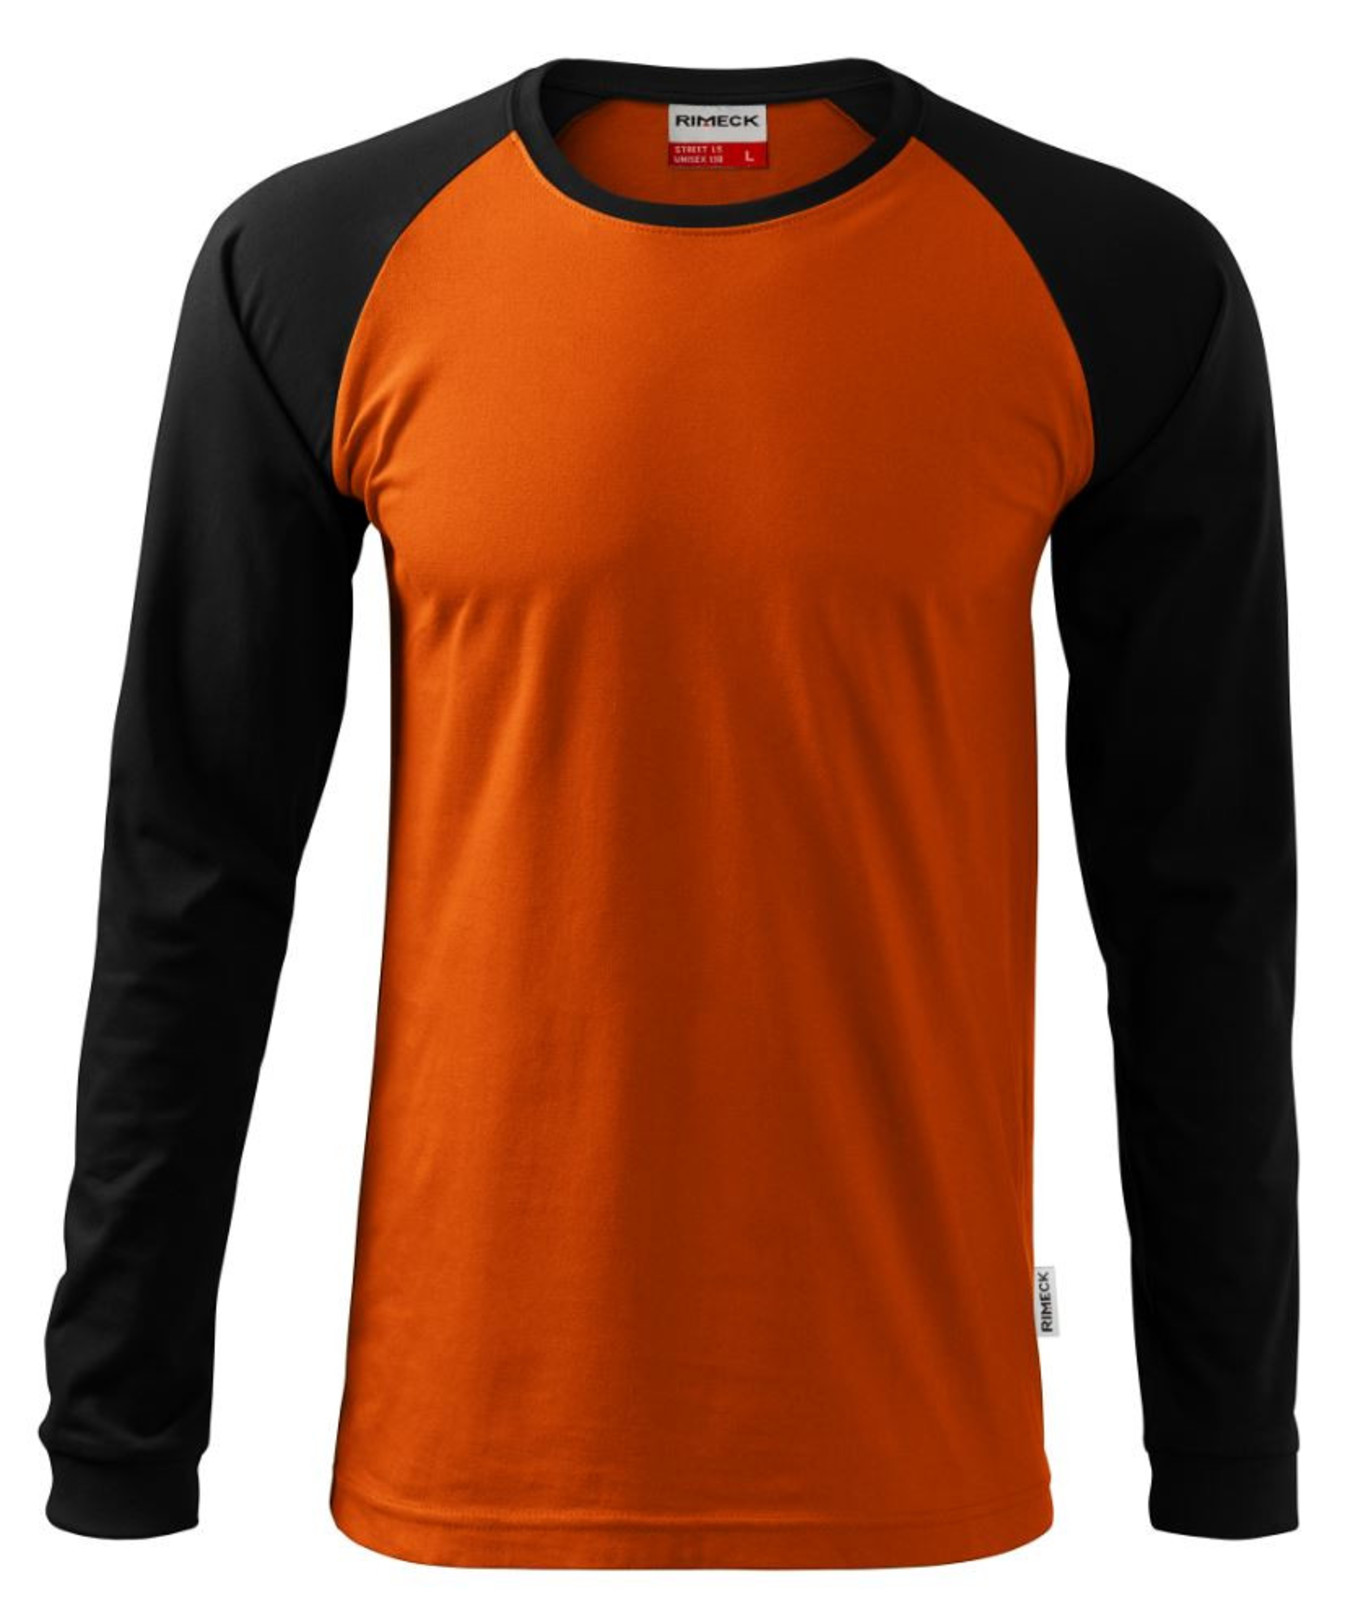 Unisex tričko s dlhým rukávom Rimeck Street LS 130 - veľkosť: S, farba: zelená/čierna